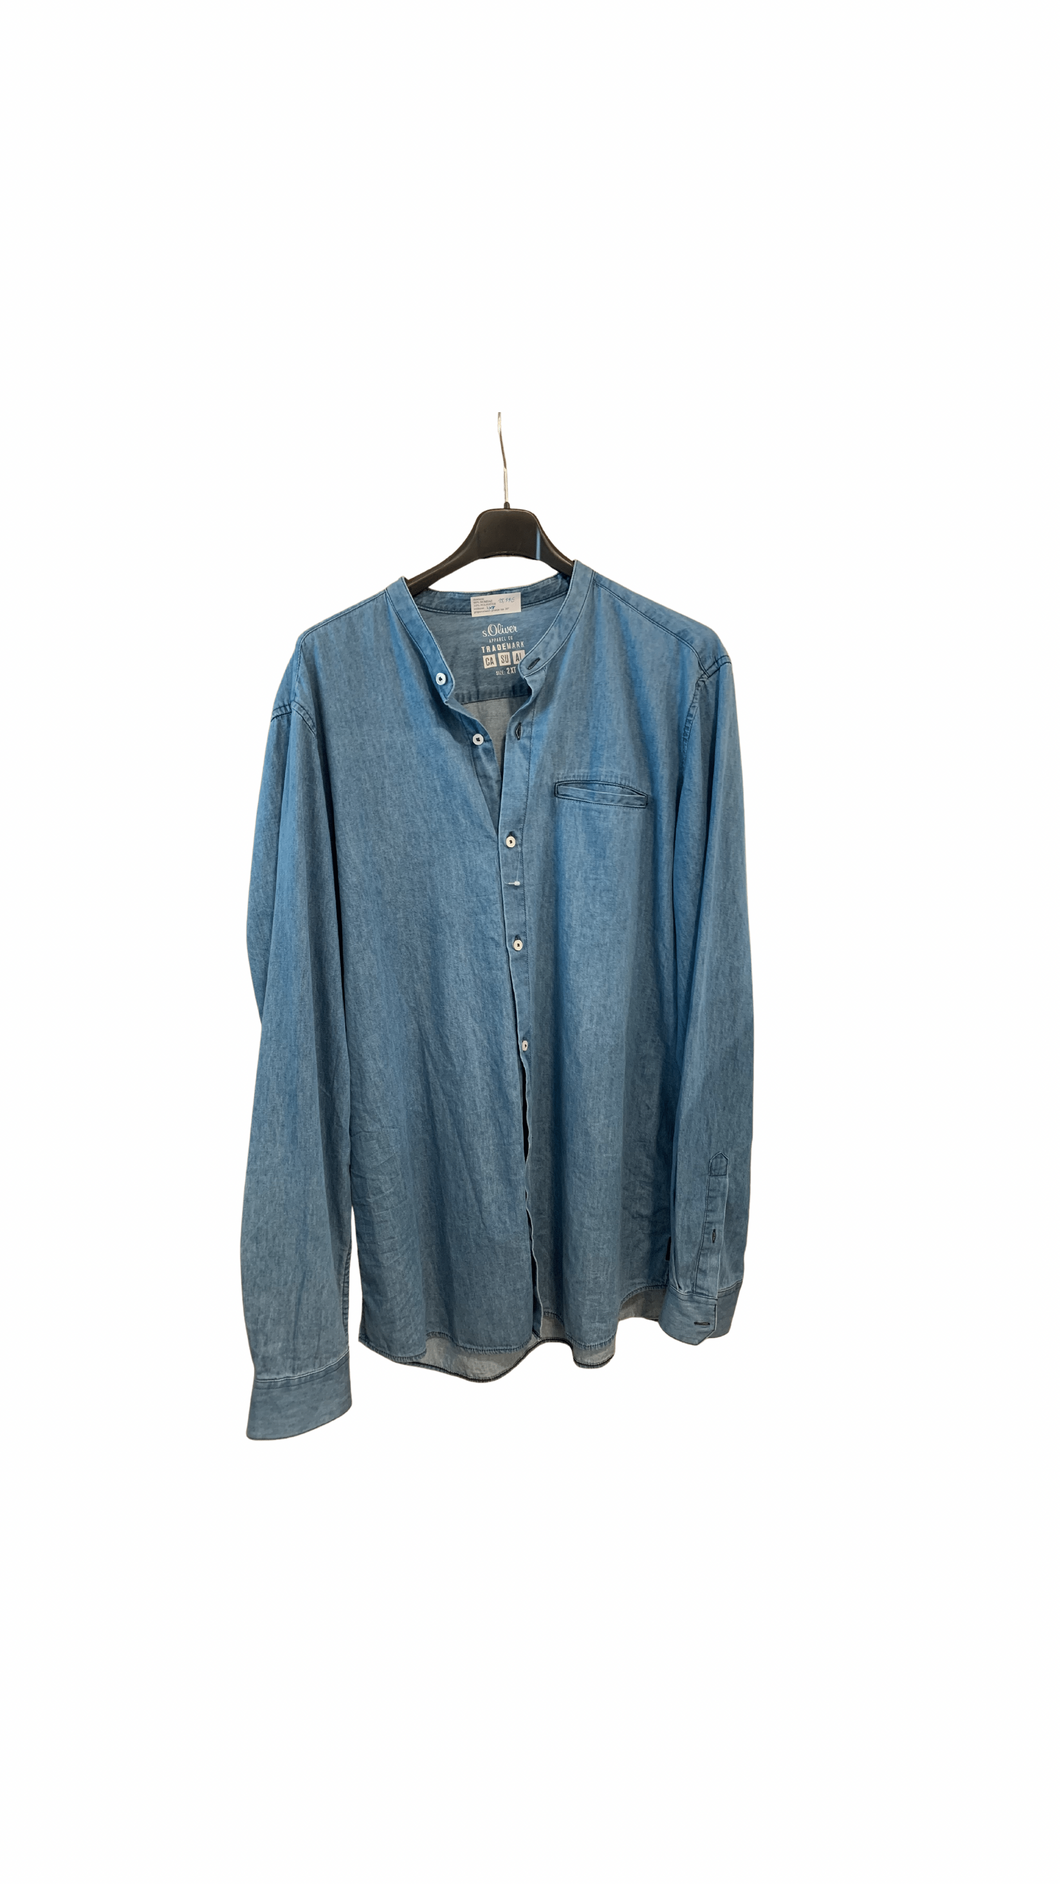 S.Oliver jeans blue shirt 2XT